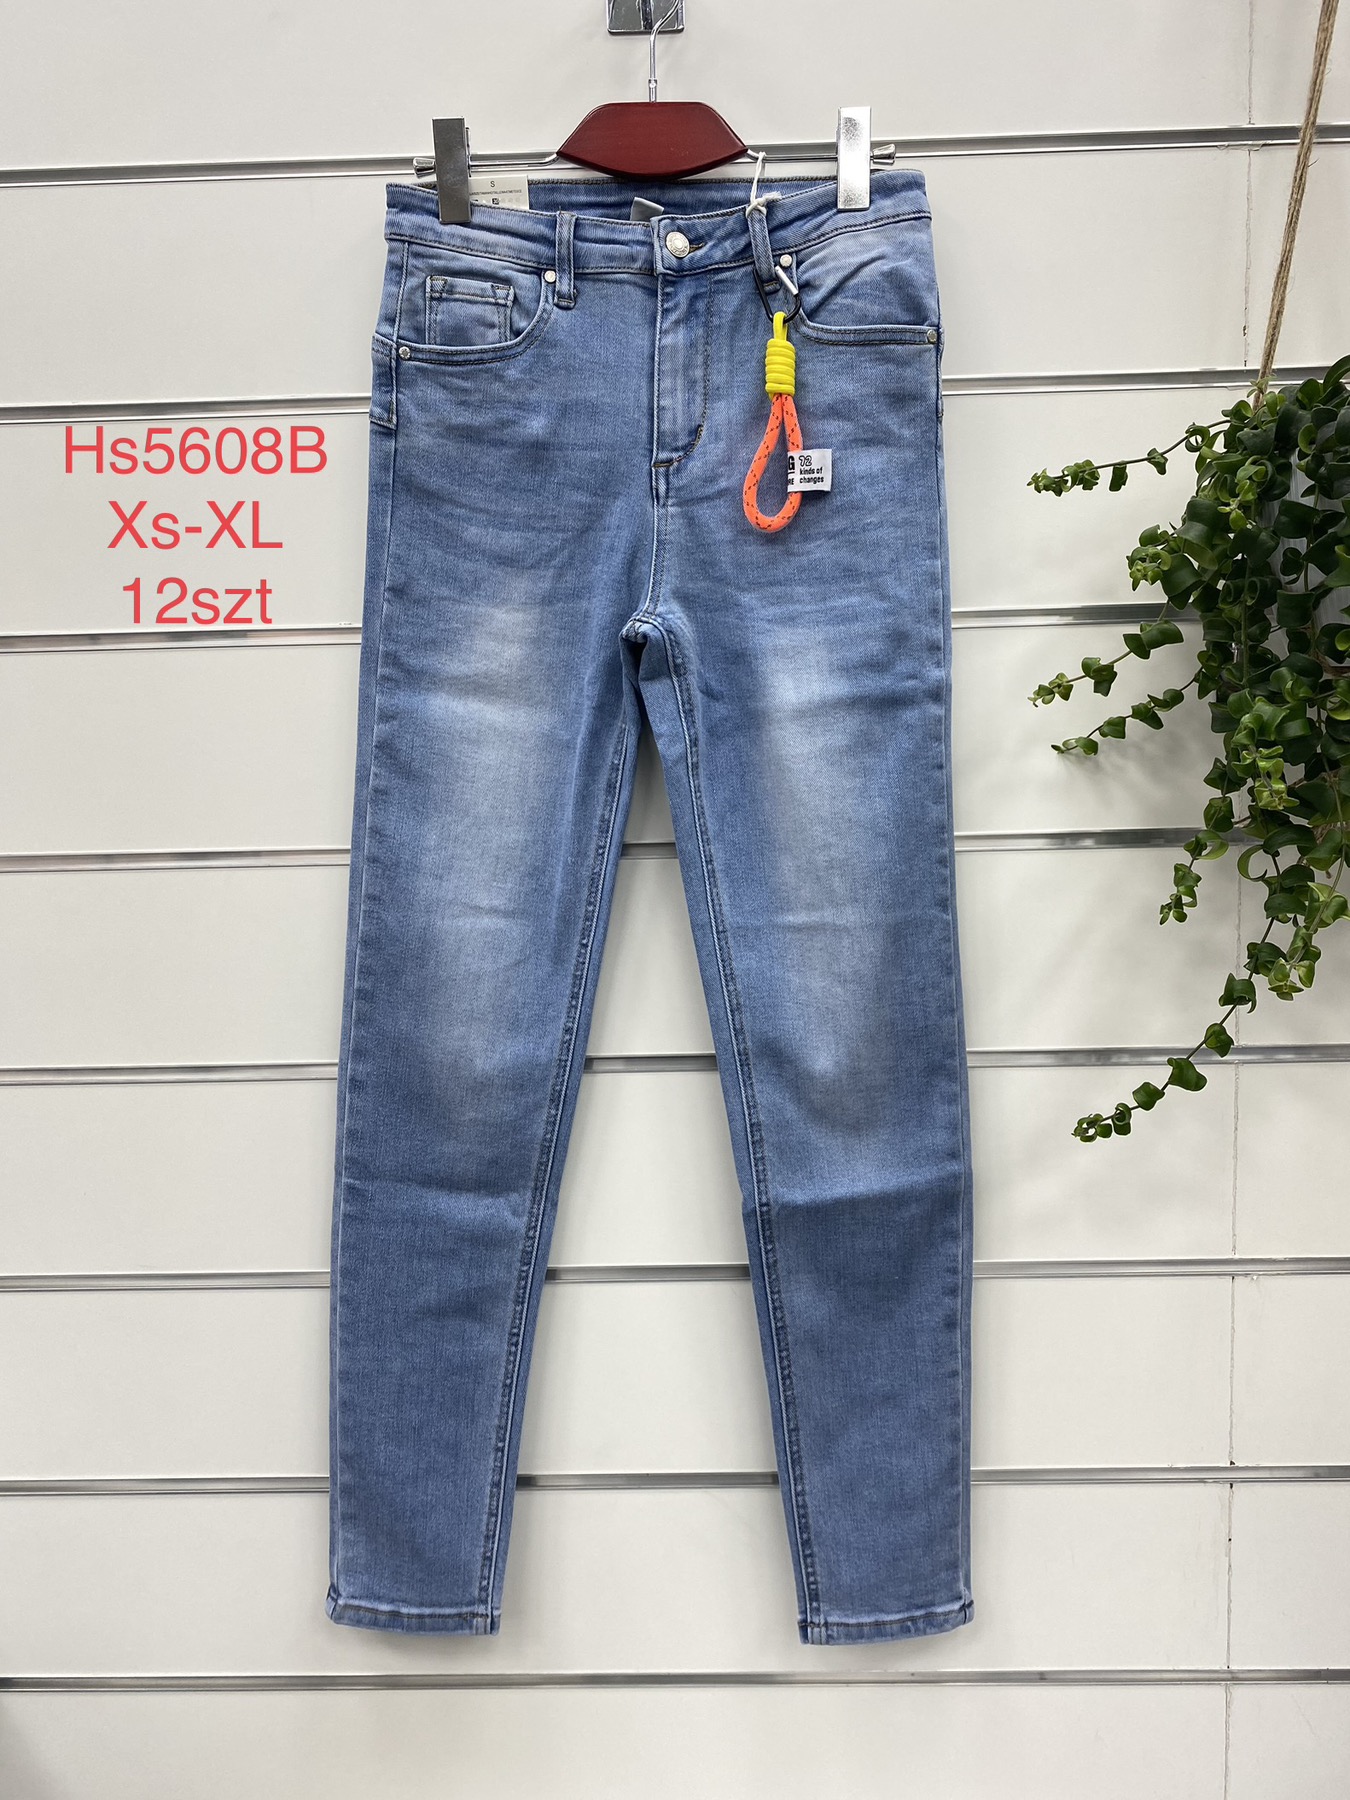 Spodnie damskie jeans Roz  S-XL .  1 kolor . Paczka 12szt